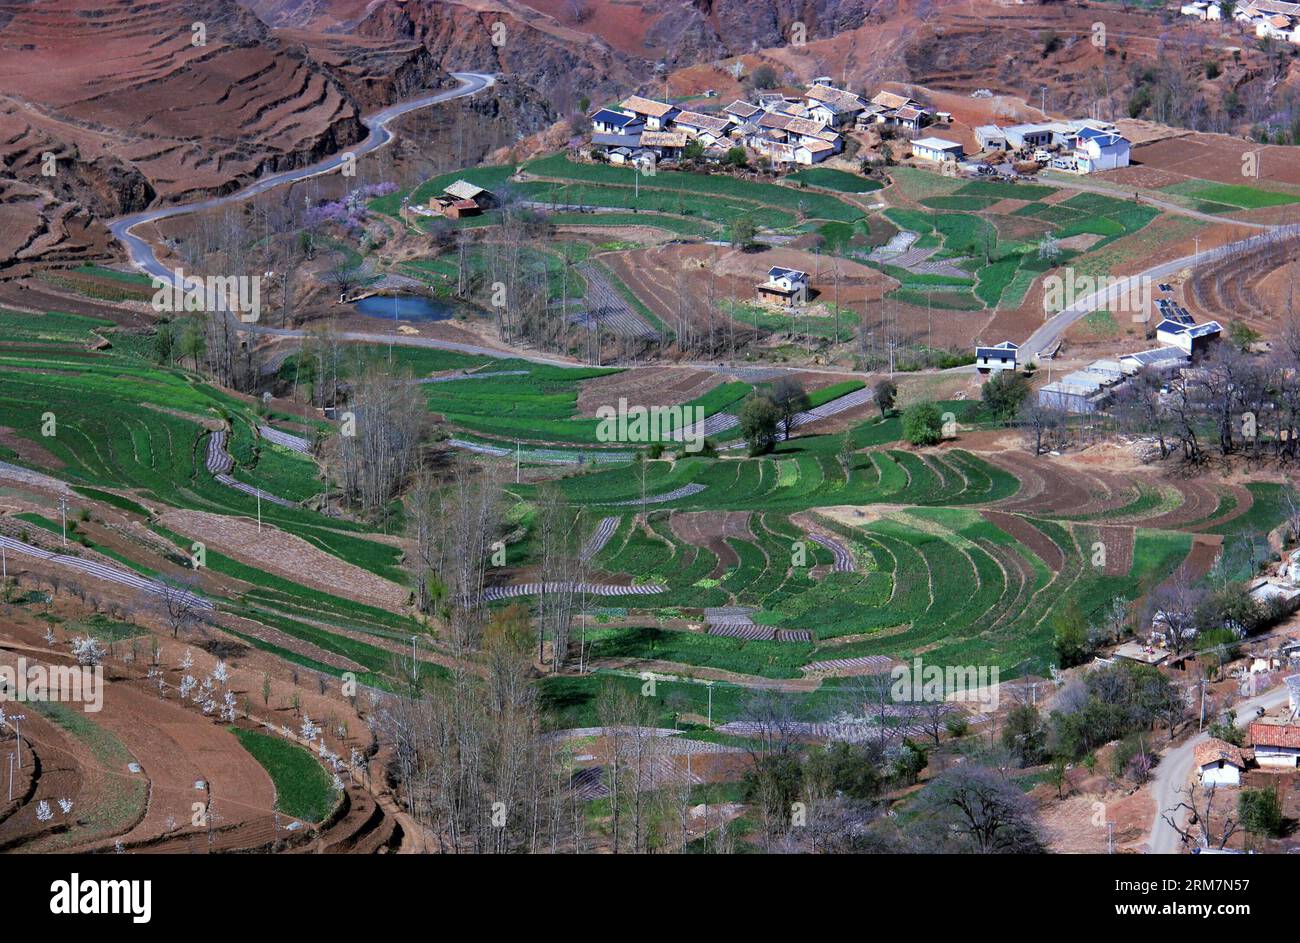 (140310) -- WEINING, 10. März 2014 (Xinhua) -- Foto aufgenommen am 9. März 2014 zeigt die Feldlandschaft in der Gemeinde Haila des autonomen Komitats Weining Yi, Provinz Guizhou im Südwesten Chinas. (Xinhua/He Huan) (lfj) CHINA-GUIZHOU-WEINING-LANDSCHAFT (CN) PUBLICATIONxNOTxINxCHN Weining März 10 2014 XINHUA Foto aufgenommen AM 9. März 2014 zeigt die Feldlandschaft in der Gemeinde Weining Yi Autonomous County Südwest China S Guizhou Provinz XINHUA HE Huan China GuiNOzhou Weining Landschaft PUxBLN Stockfoto